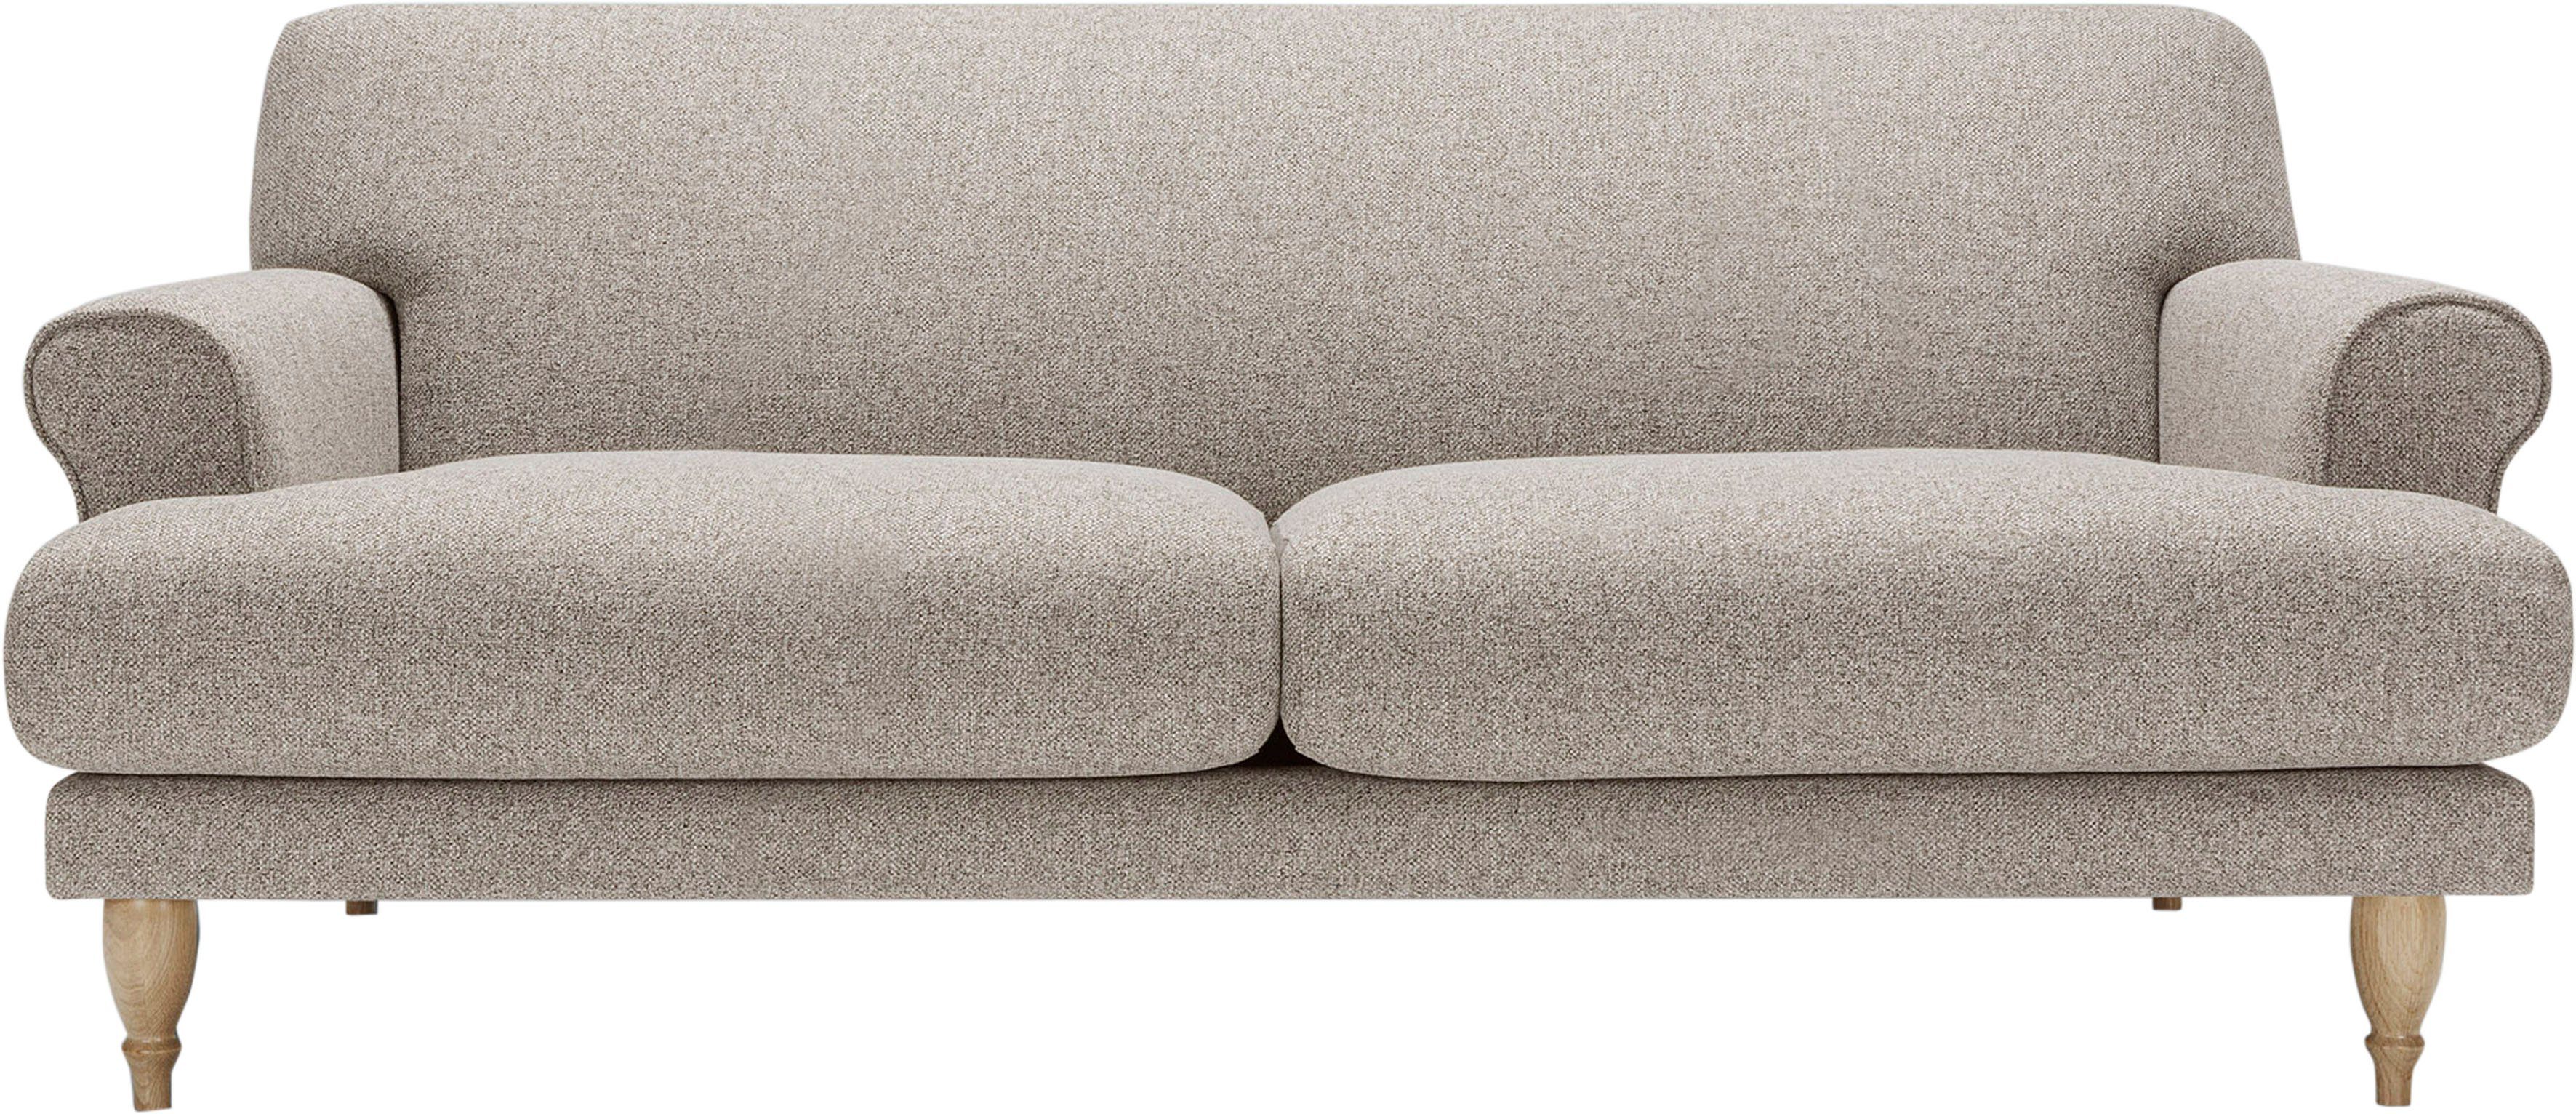 Sitzunterfederung Ginger, 2-Sitzer, natur, Sofa Eiche mit Polsterunterlage in Füße LOVI